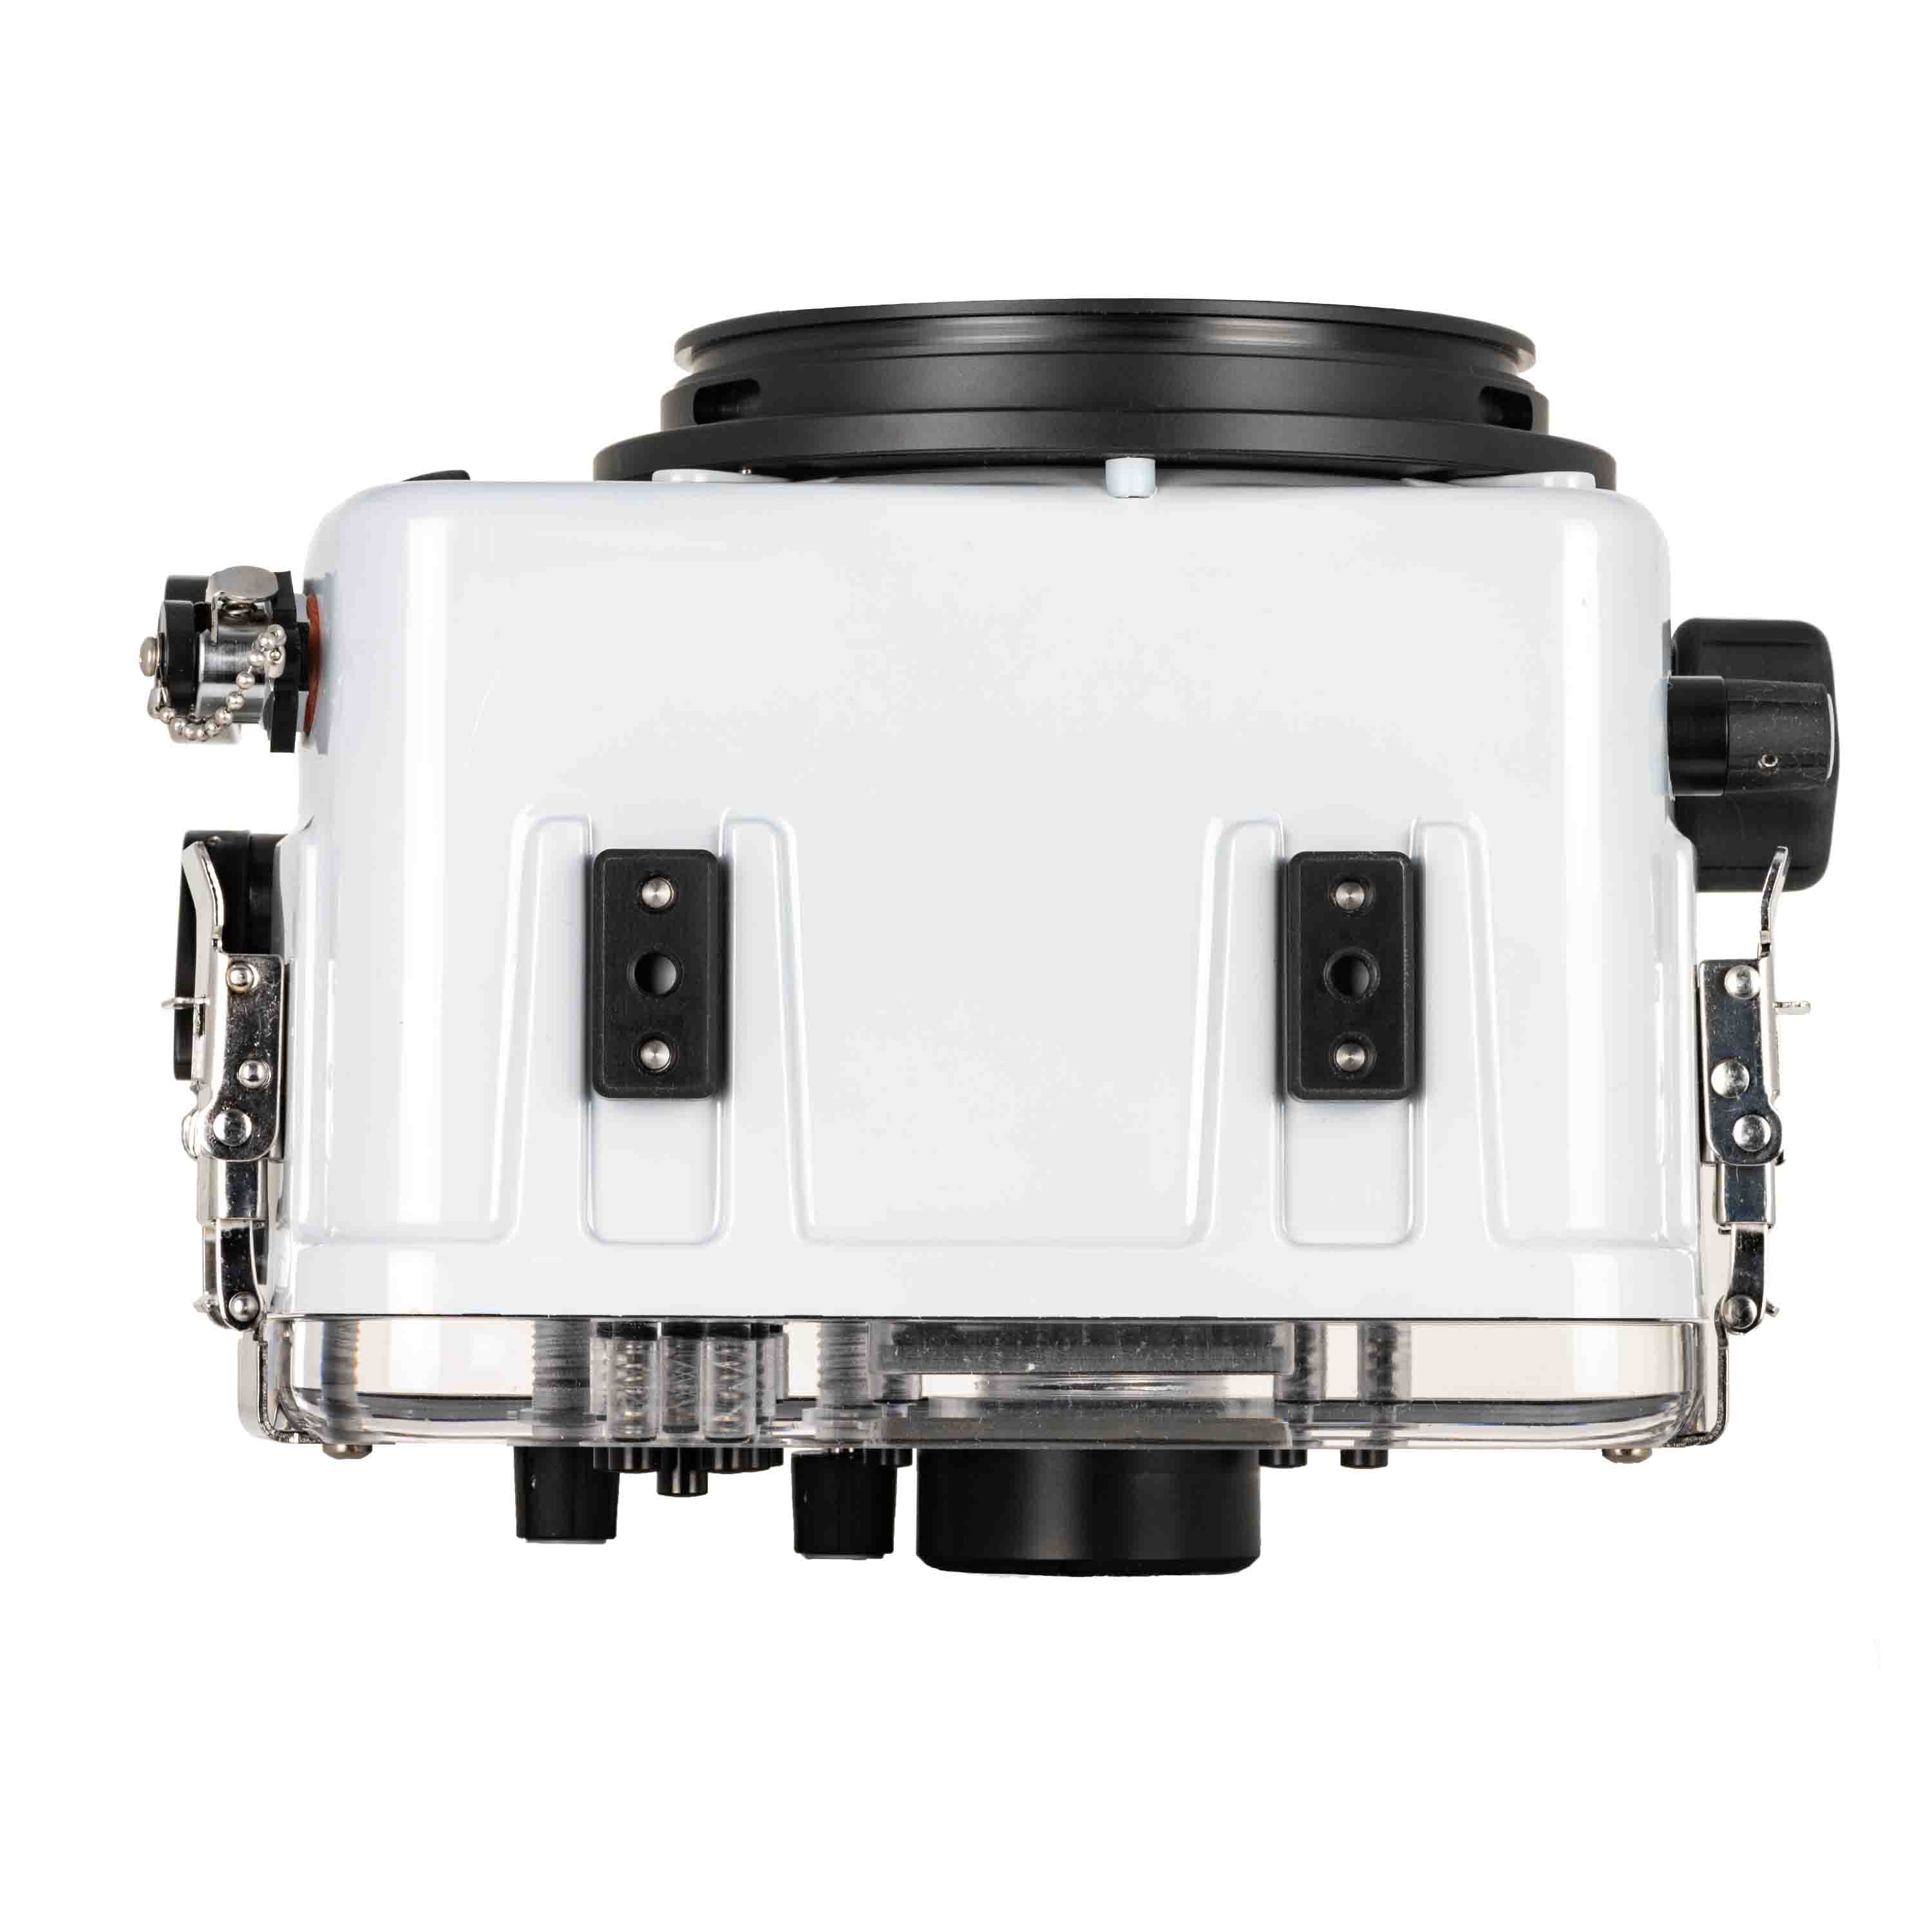 Ikelite 200DL Underwater Housing for Panasonic Lumix S5 II Mirrorless Digital Cameras